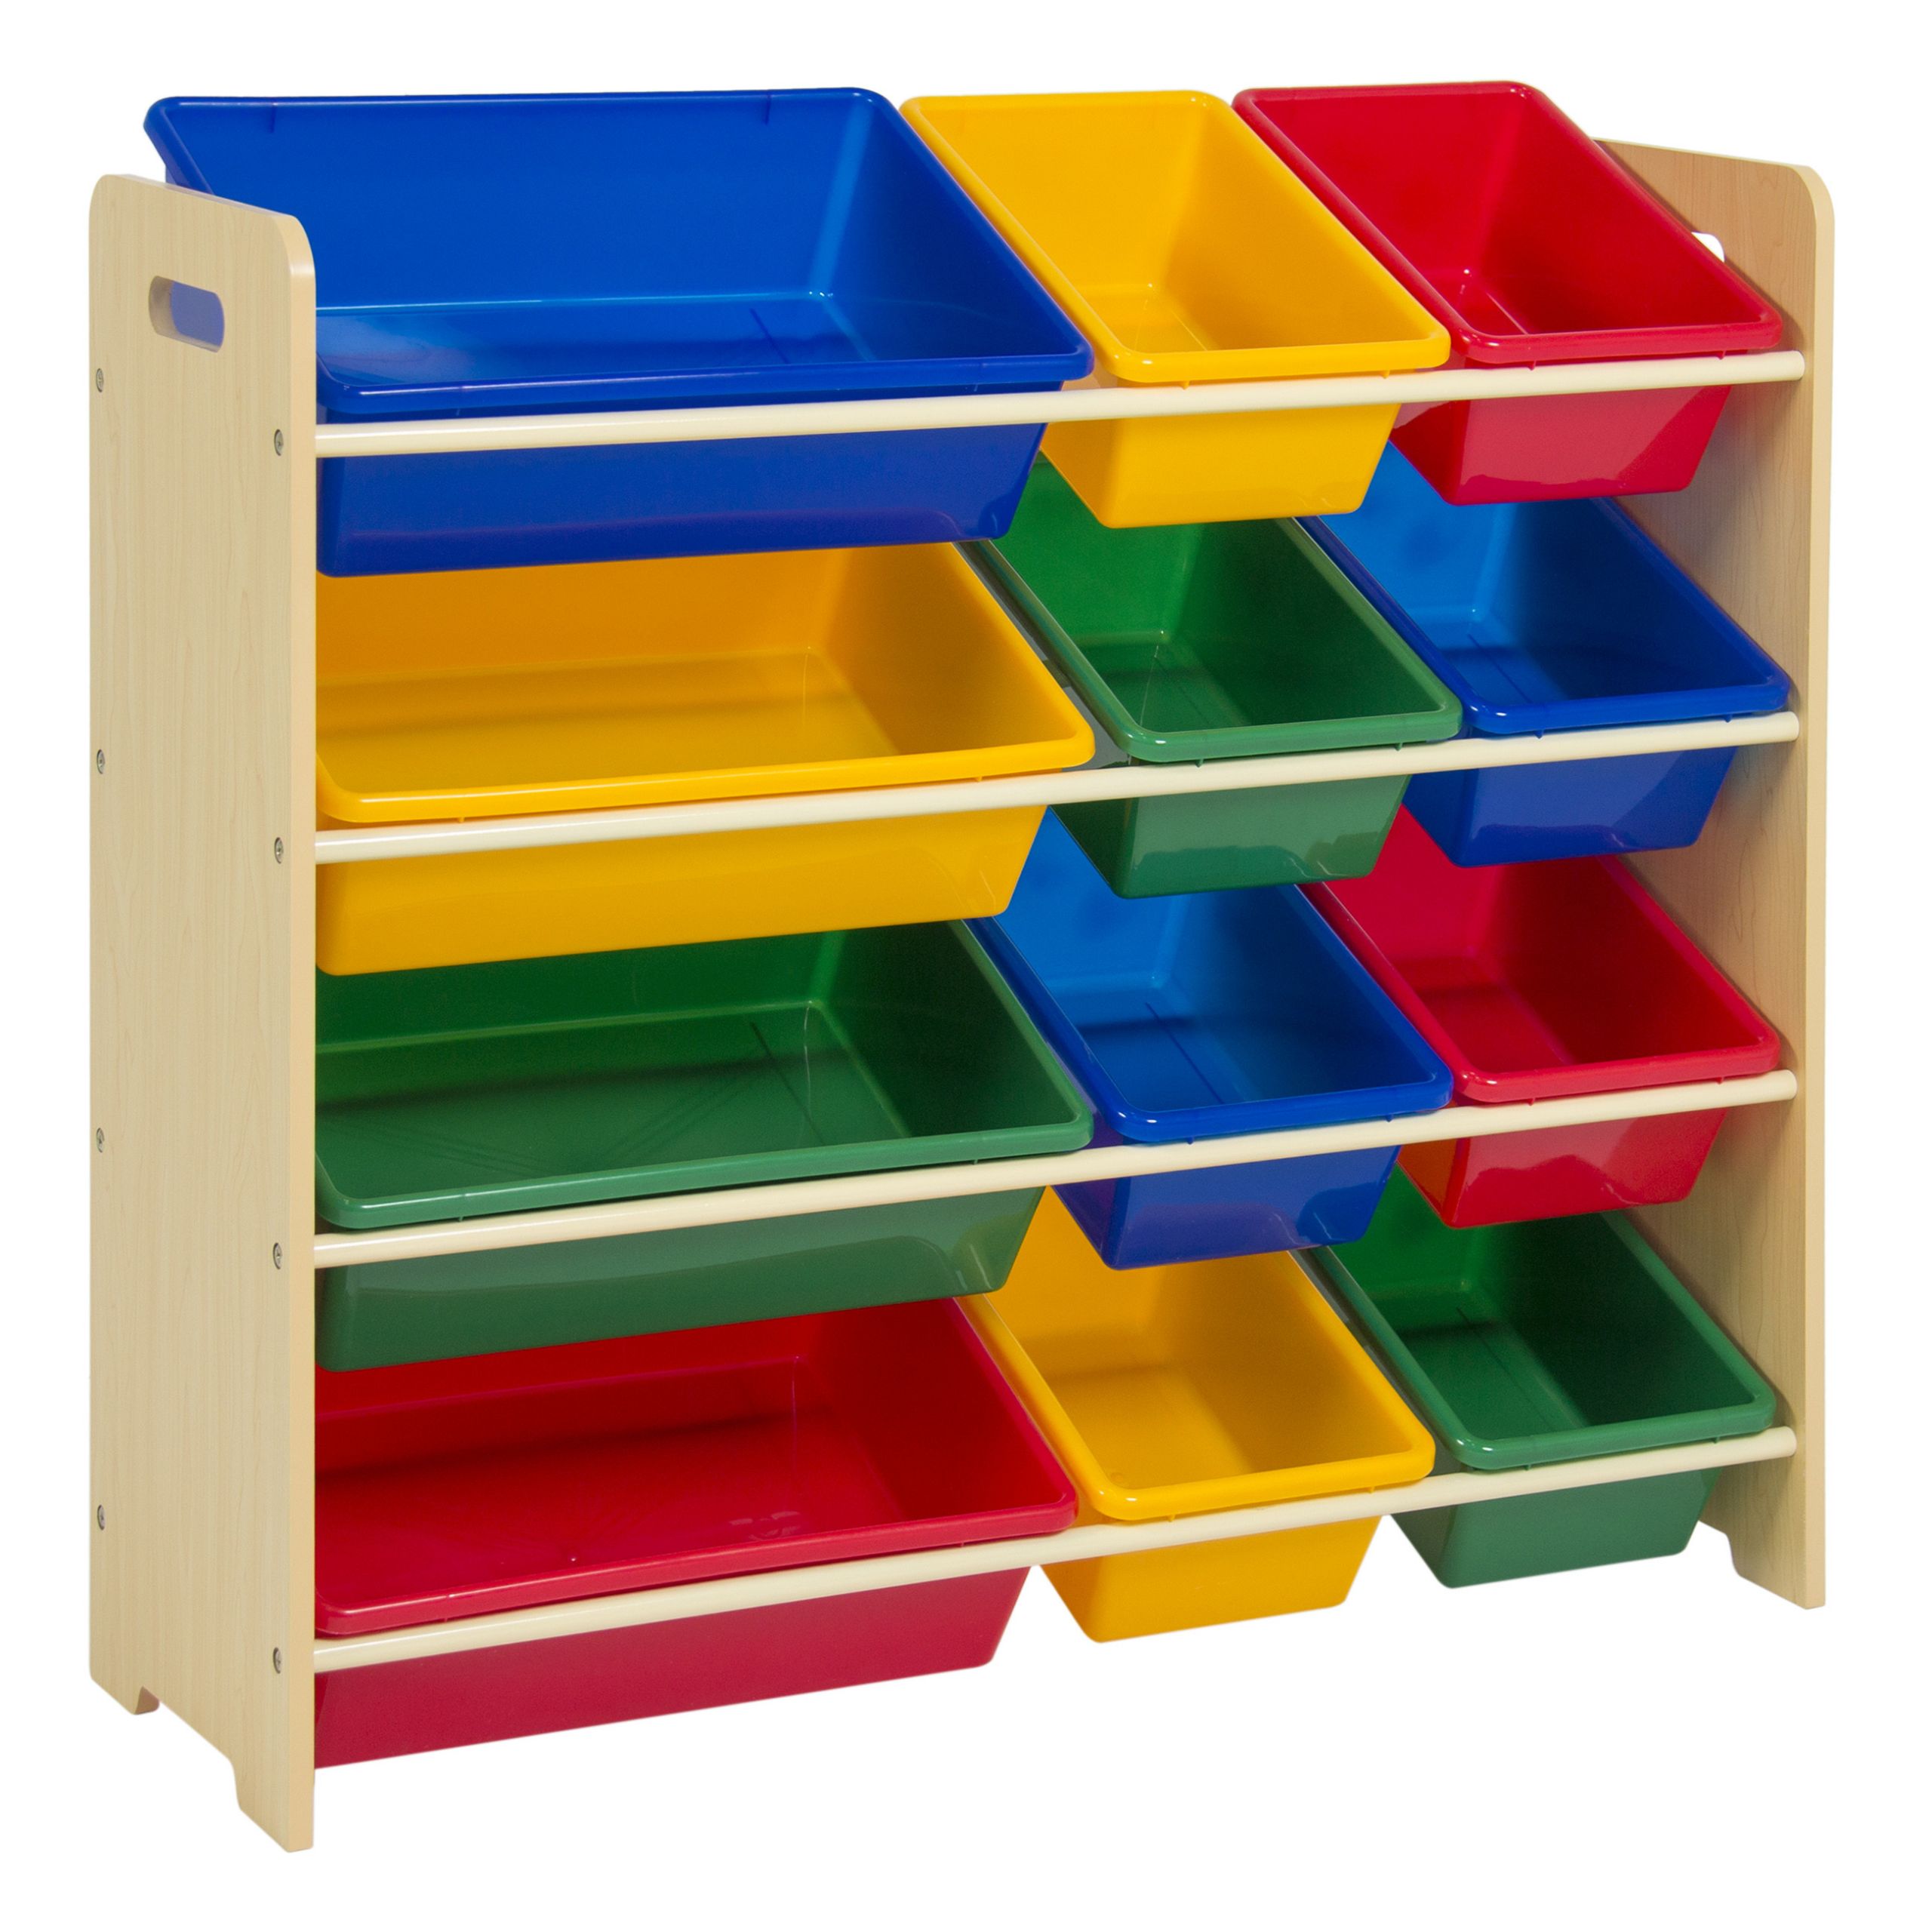 Childrens Storage Bin
 Toy Bin Organizer Kids Childrens Storage Box Playroom